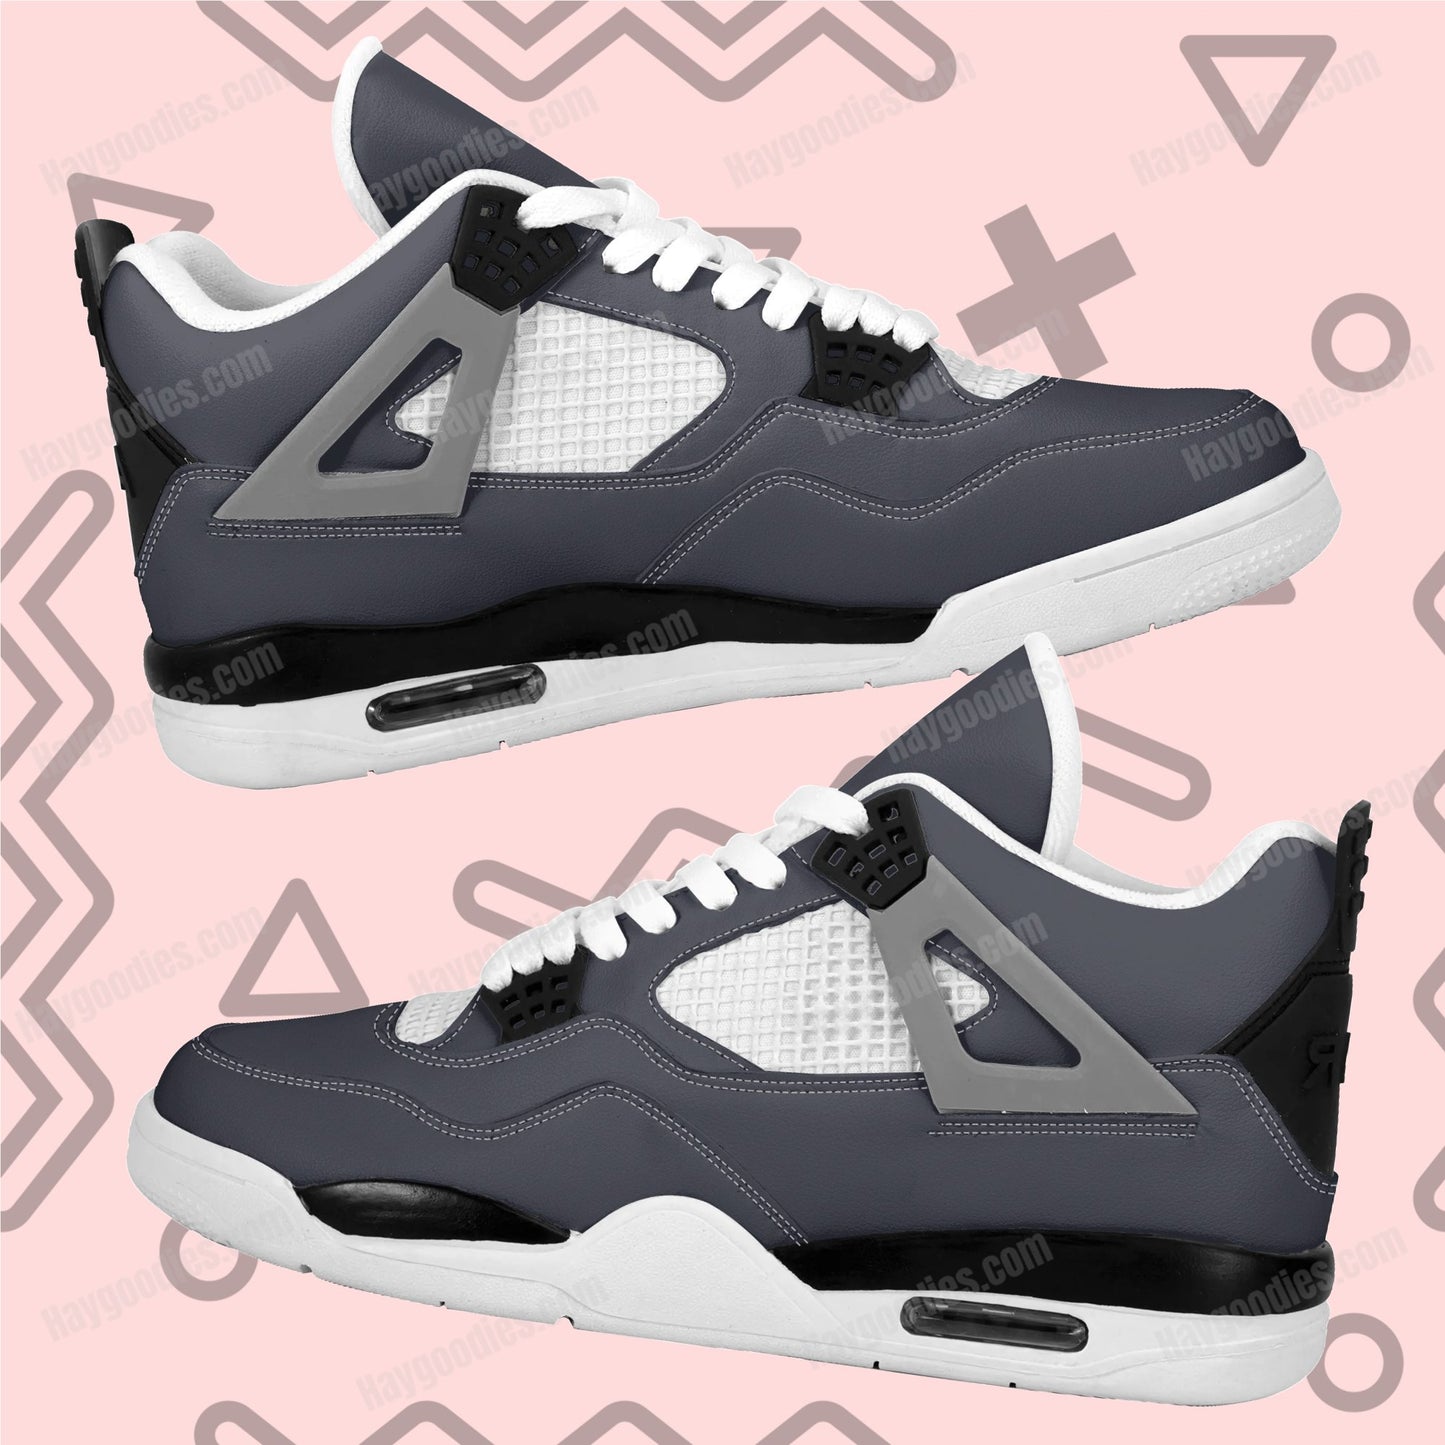 Dark Grey Color Retro Low Top J4 Style Sneakers